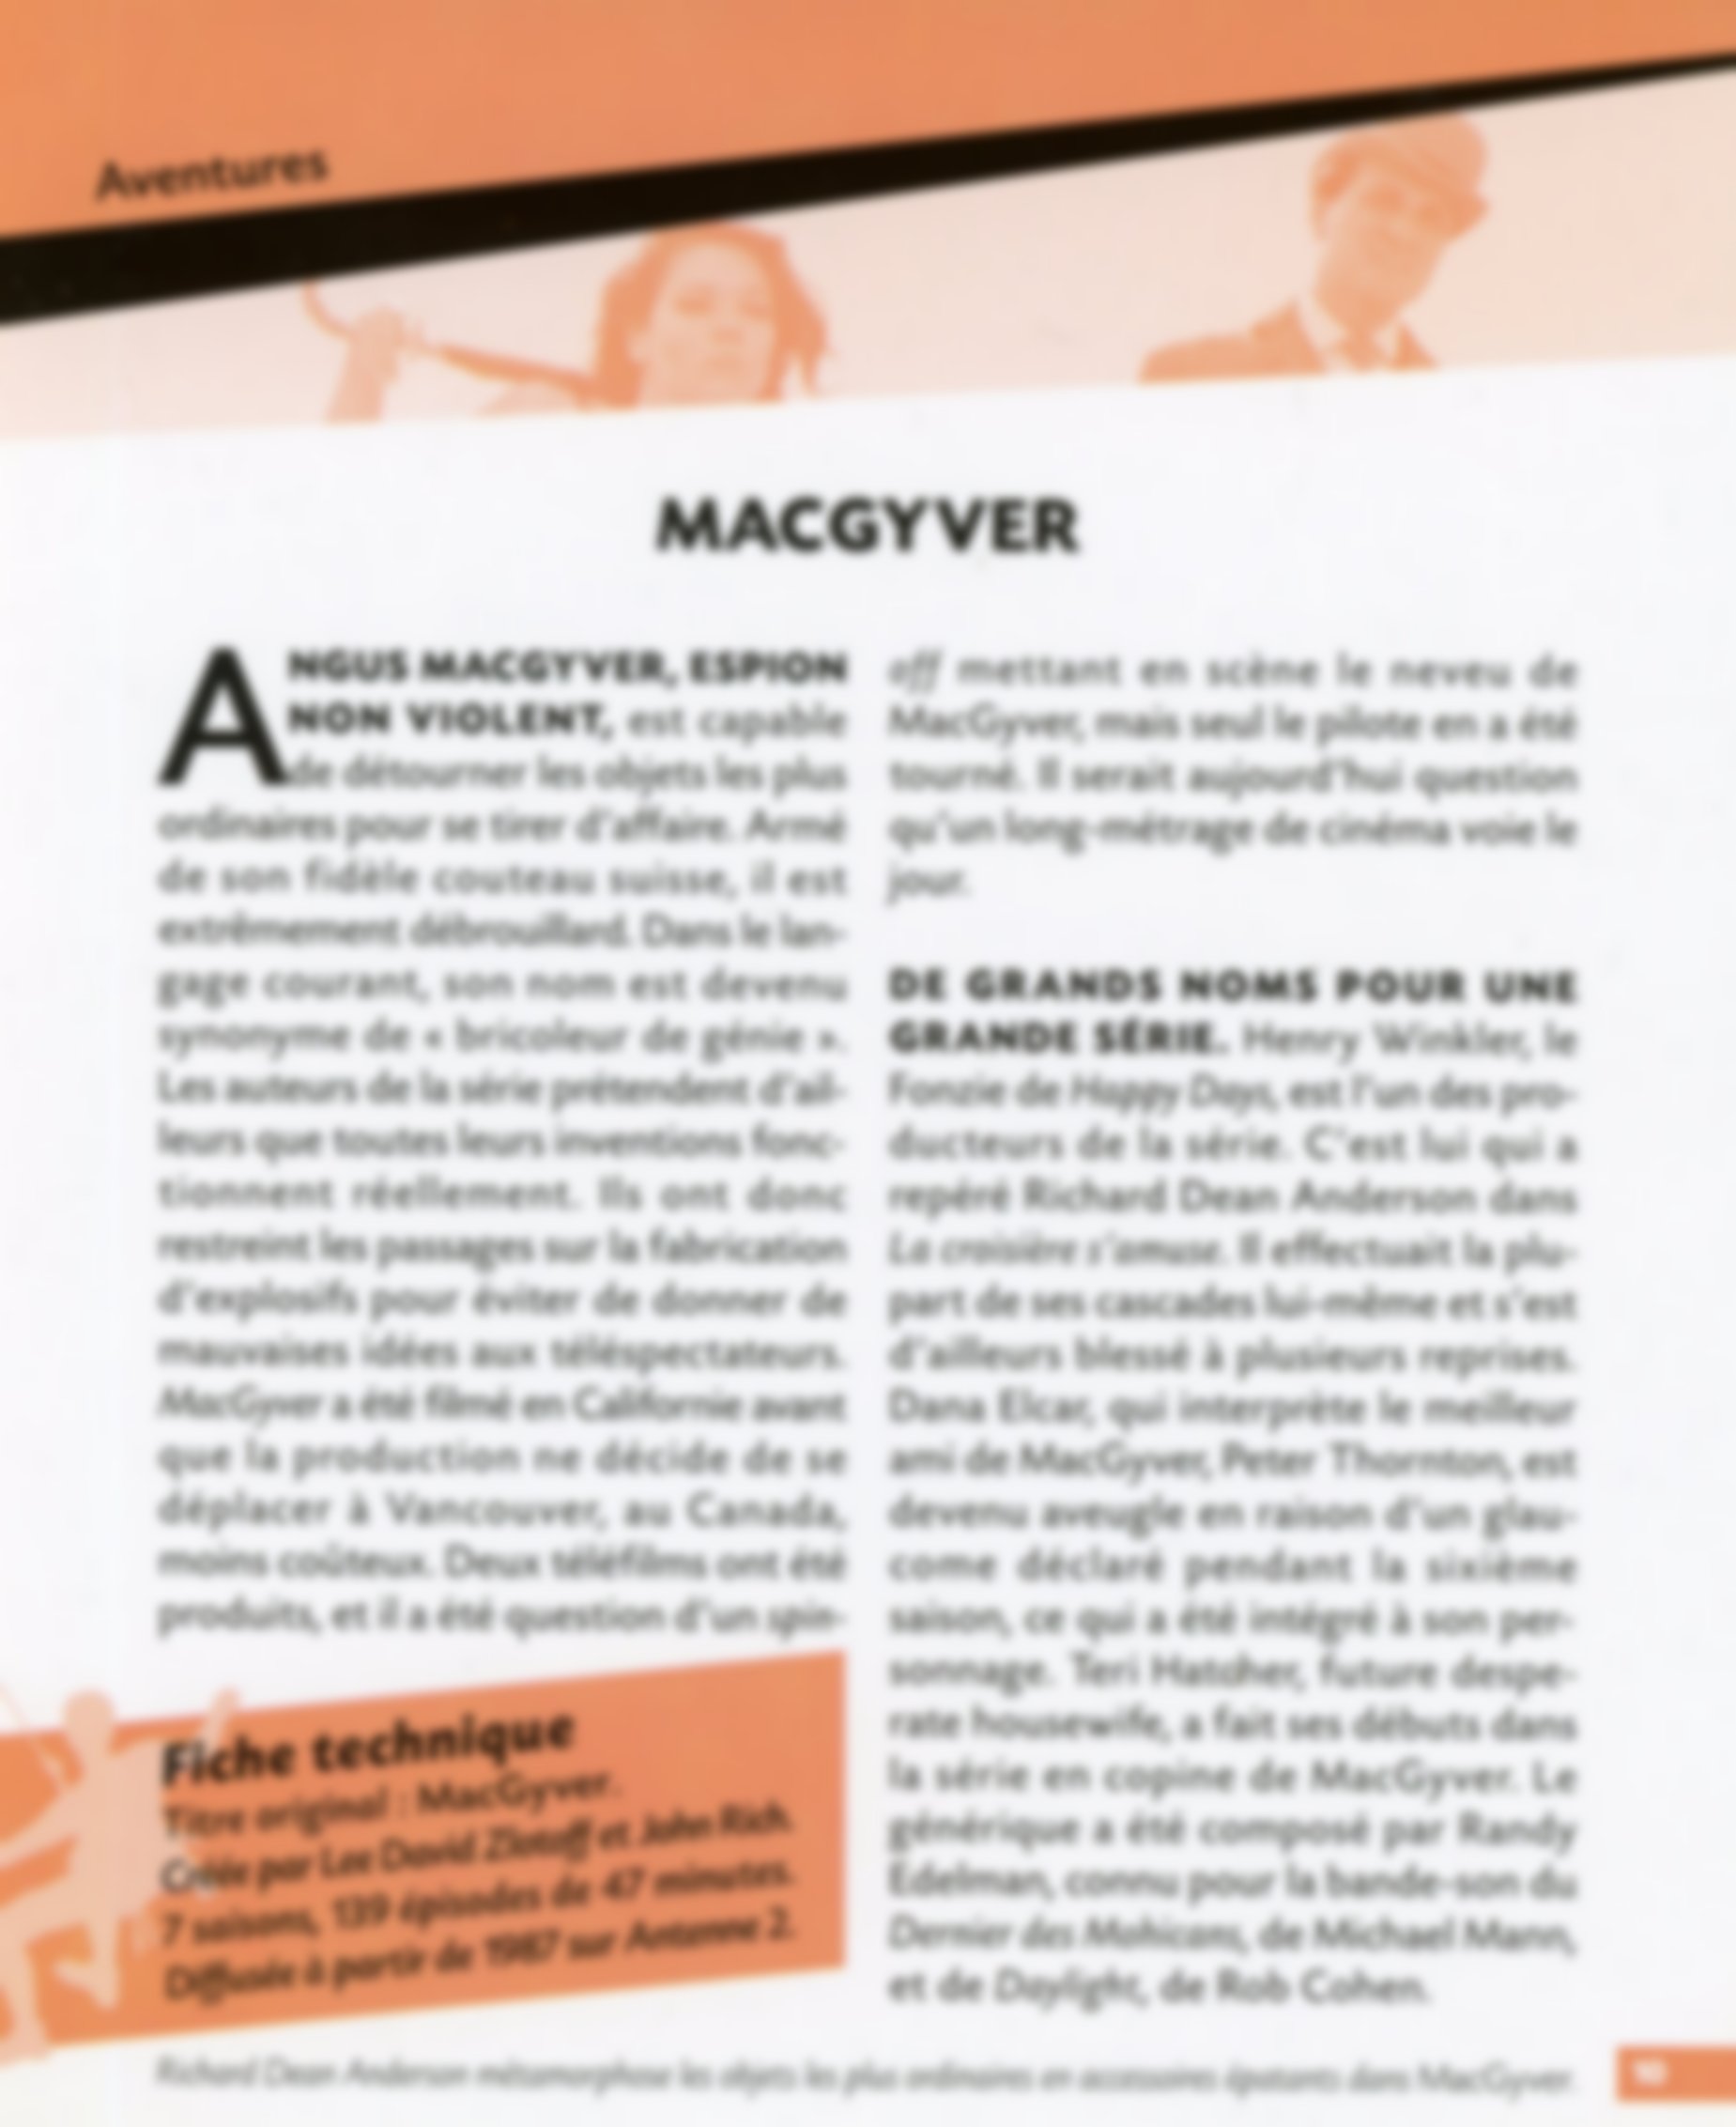 macgyver-saison-fiche-série-tv-lemasterbrockers-fiche-technique-cinéma